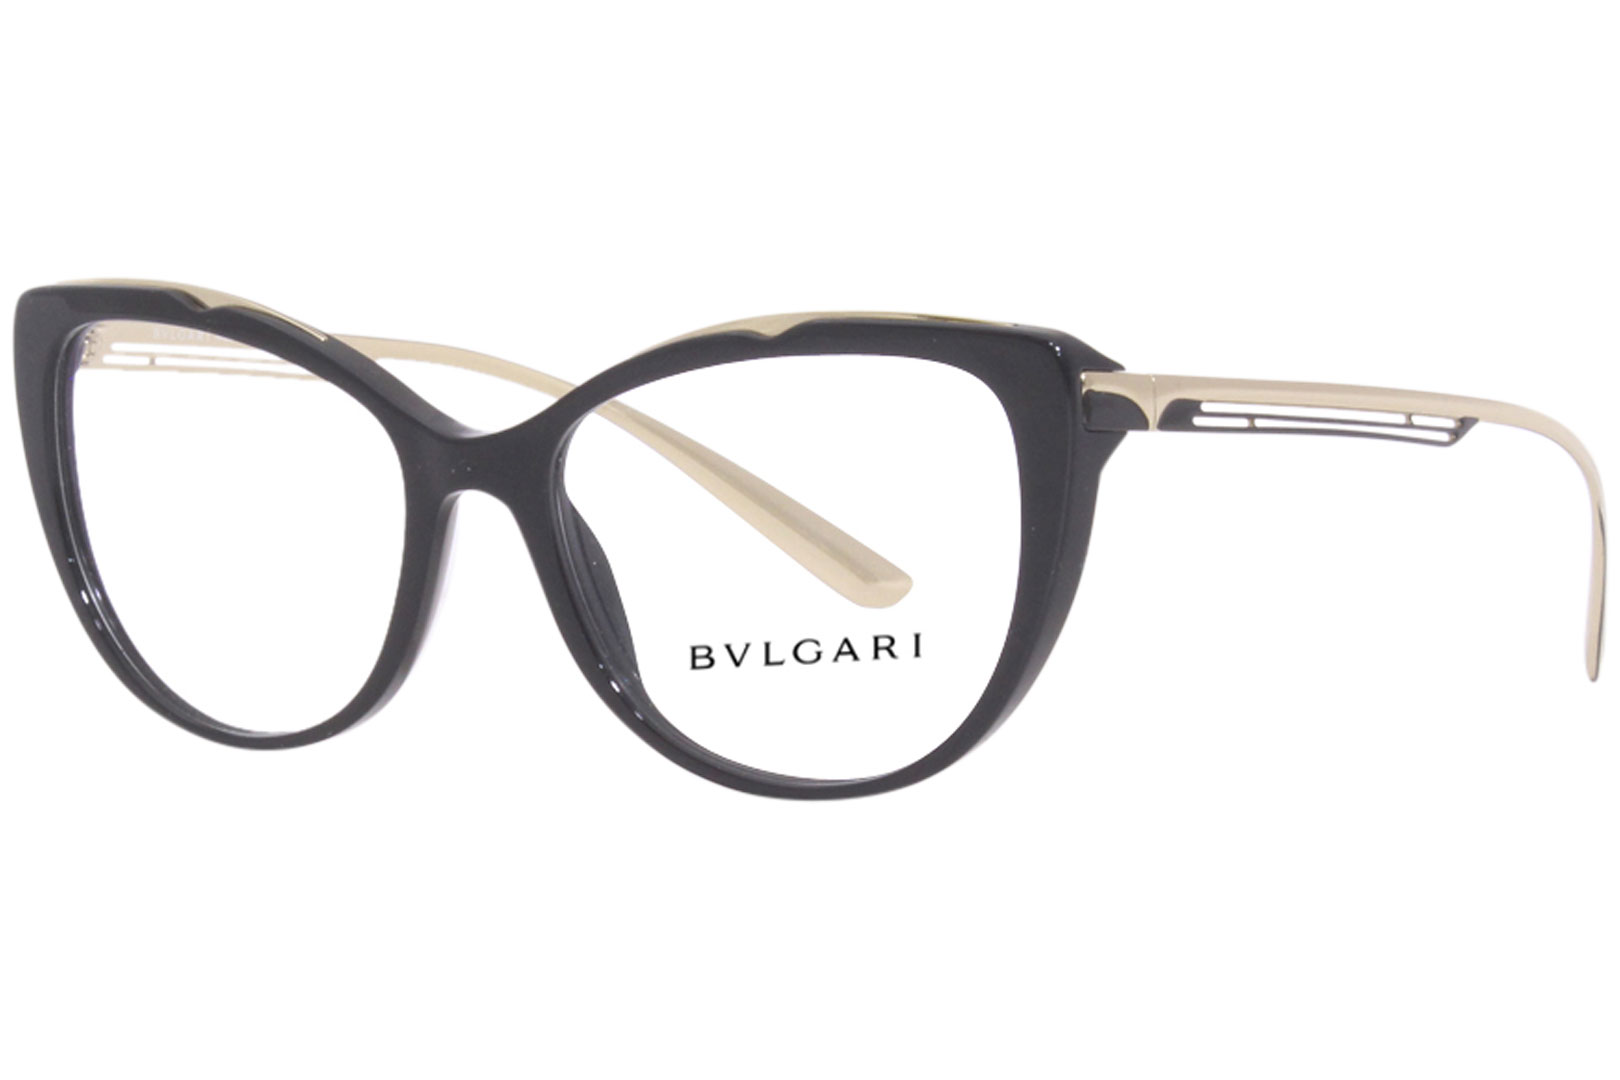 Bvlgari Eyeglasses Frame Women's 4181 501 Black/Gold 51-16-140 ...